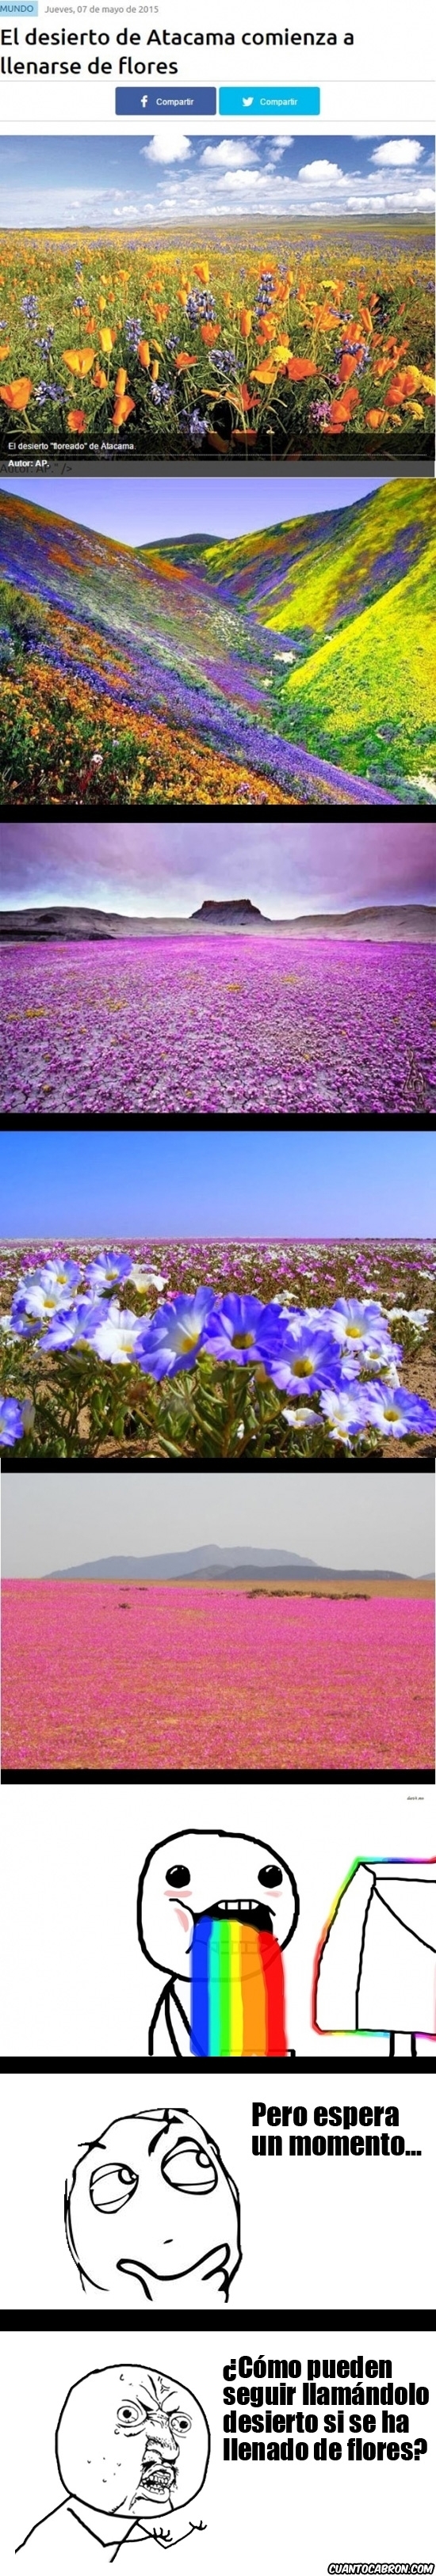 Y_u_no - El desierto de Atacama, ¿lleno de flores?